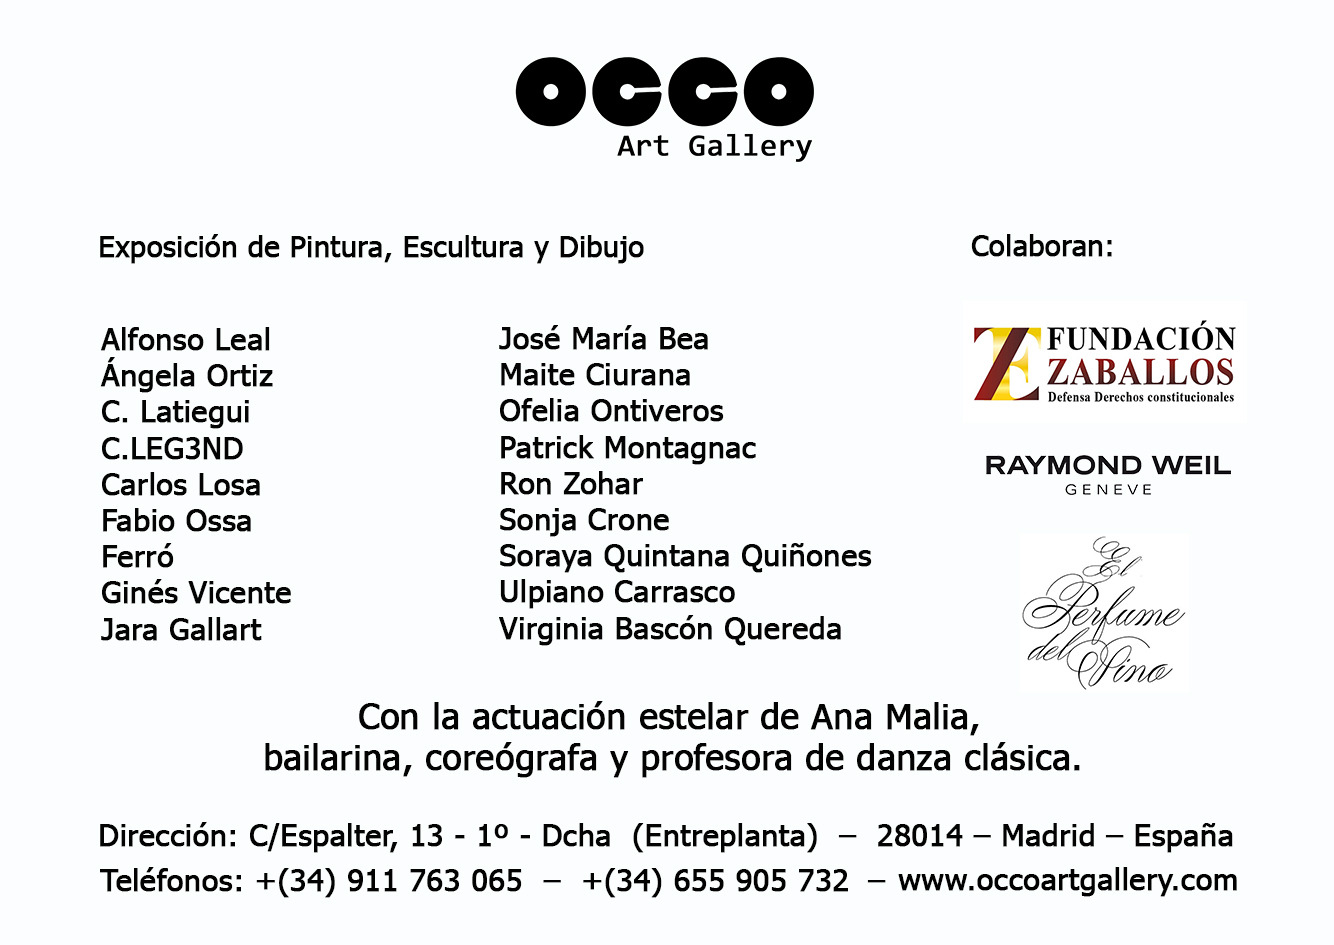 OCCO Art Gallery exposición colectiva de pintura, escultura y dibujo en Madrid.